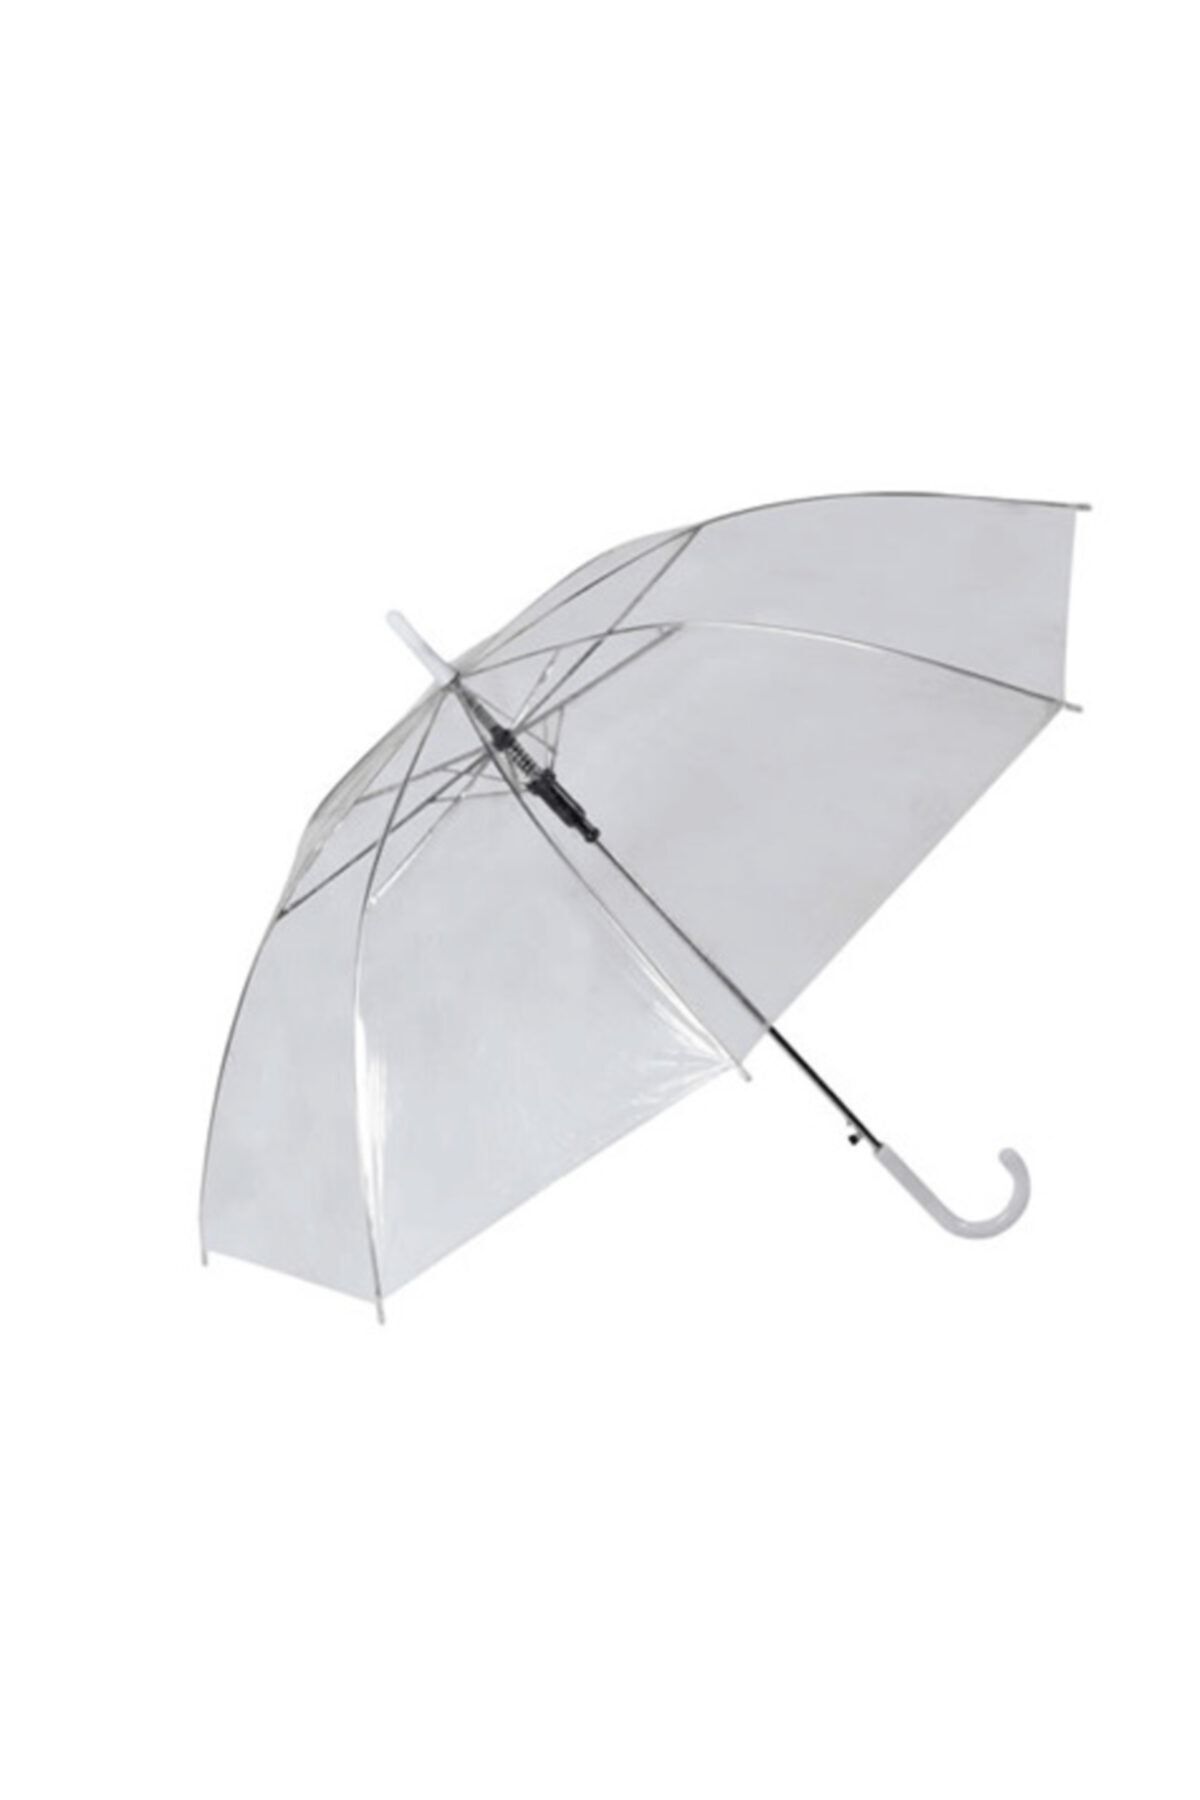 FırsatVar Erkekler Için Şeffaf Yağmurluk Tam Otomatik Şemsiyes